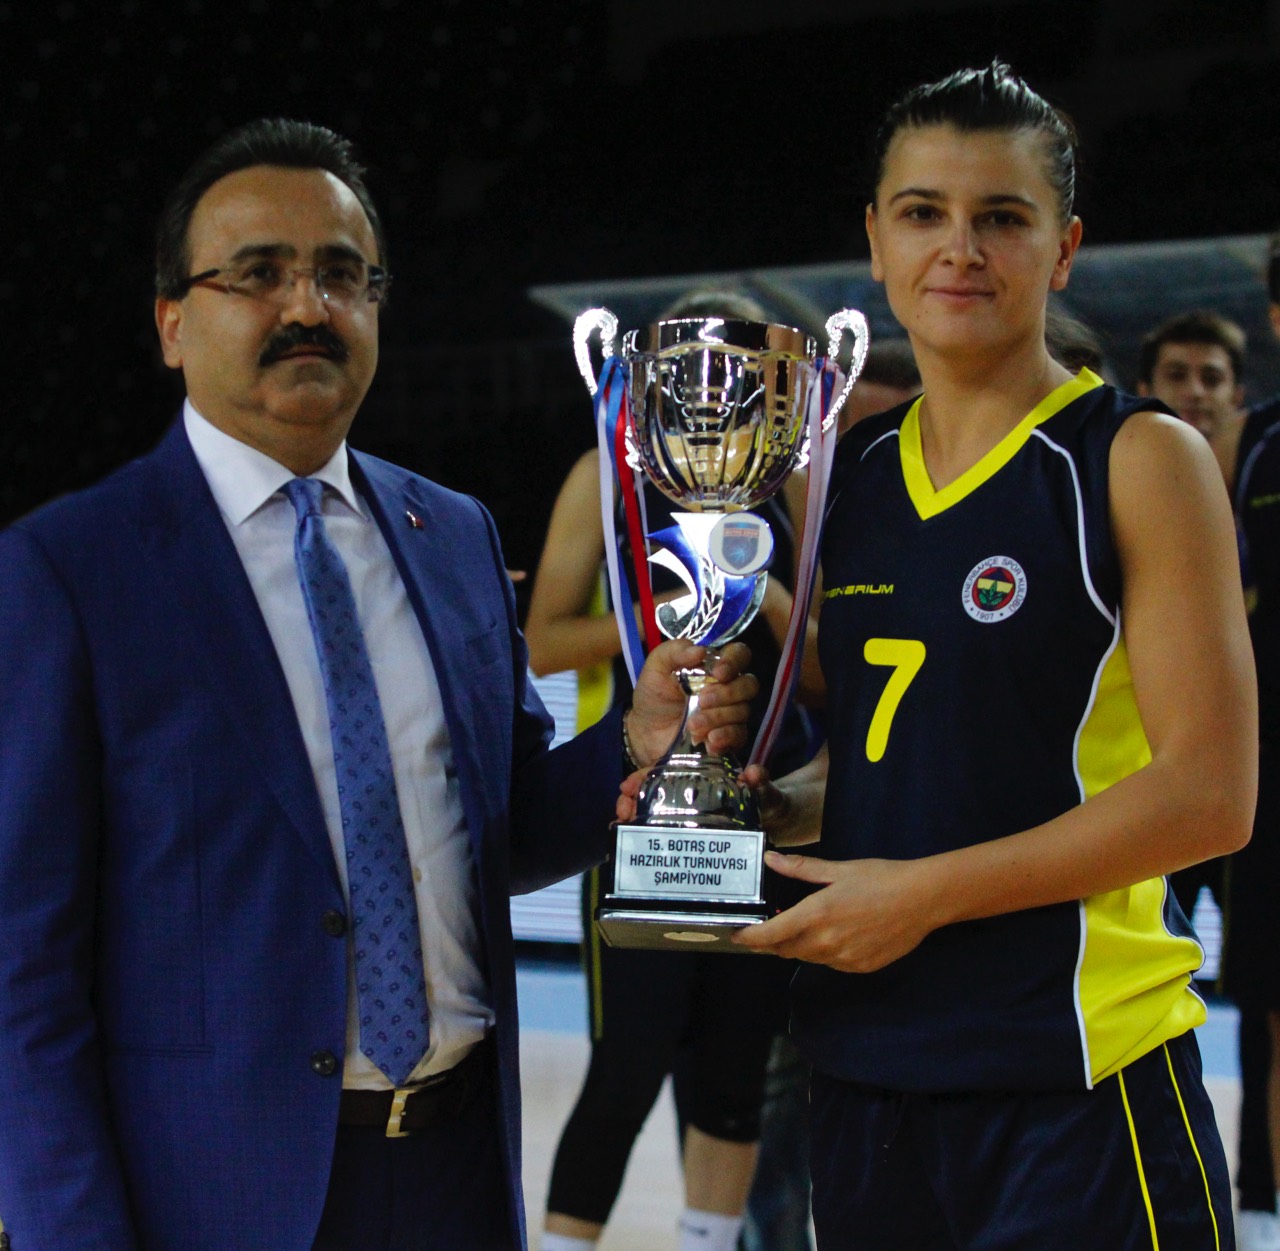 15. BOTAŞ Cup